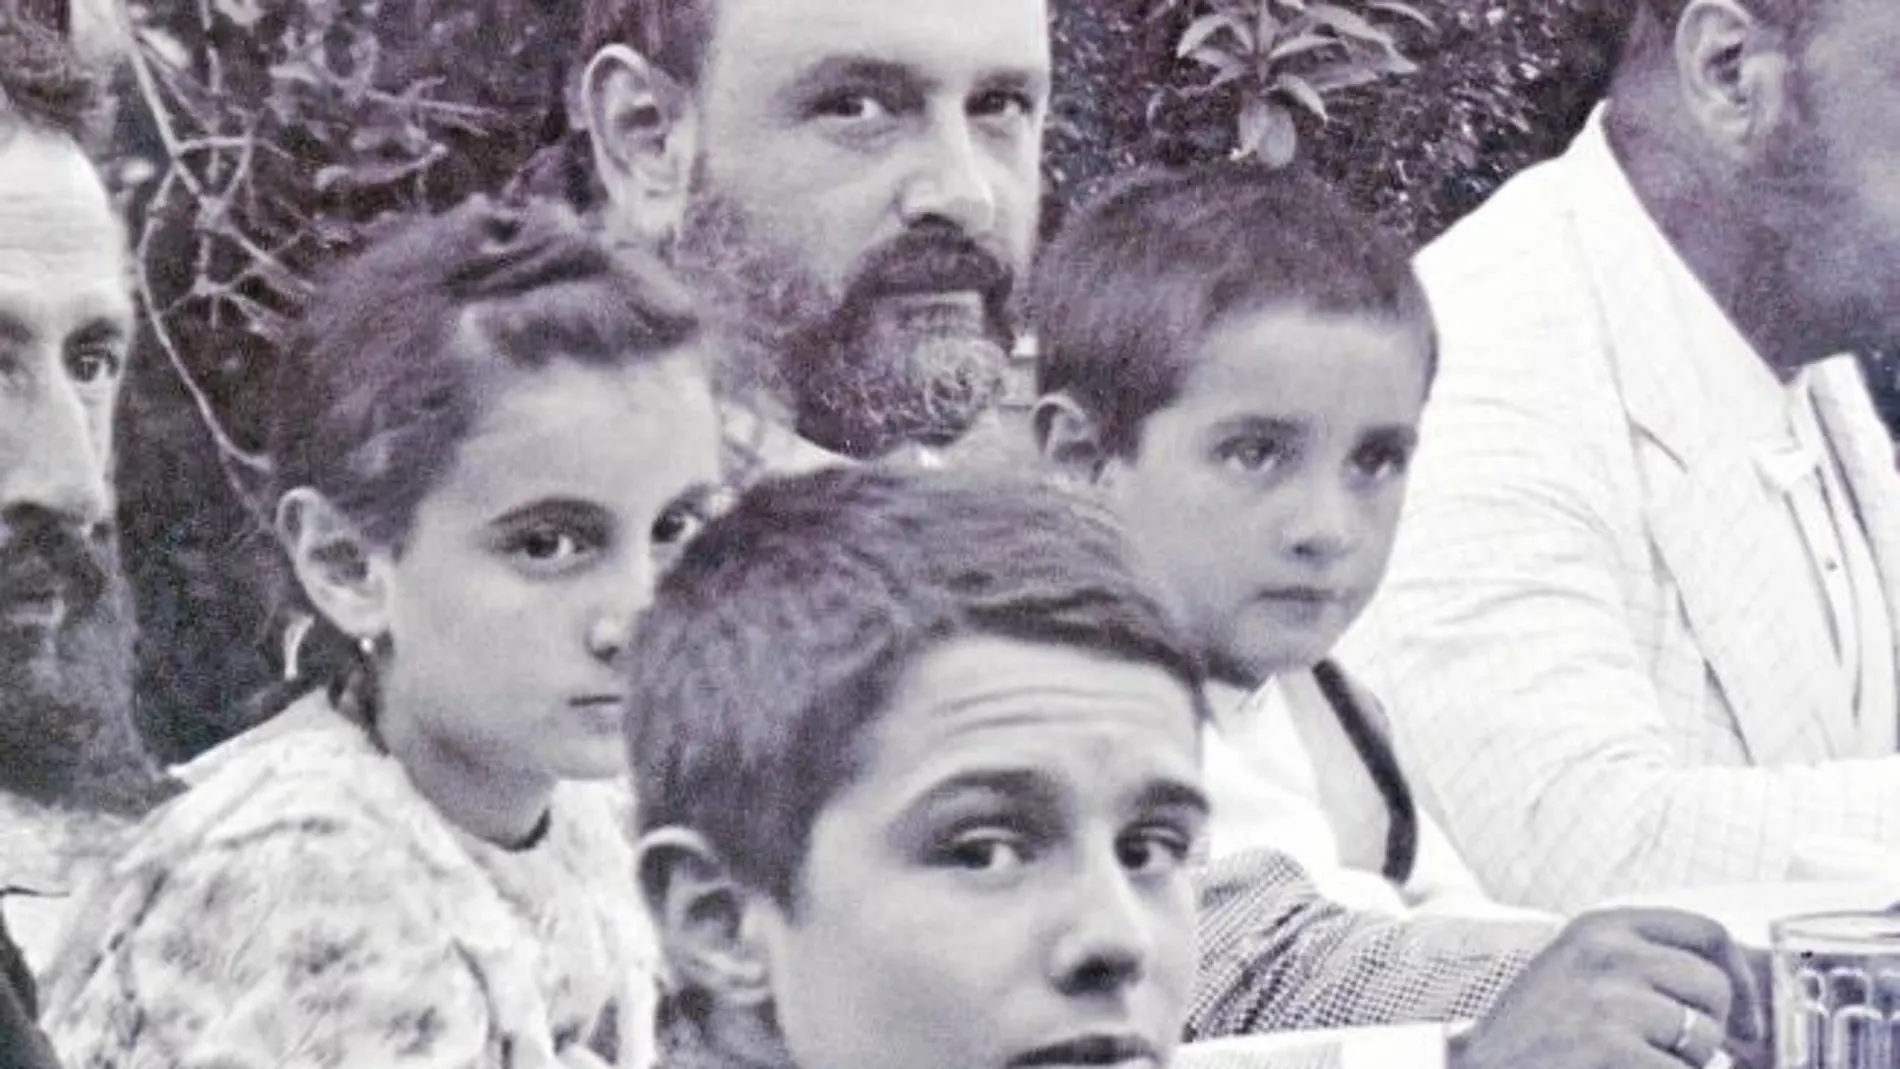 Pablo Ruiz Picasso aparece aquí junto a otros familiares en el Lagar de Llanes (Málaga) en 1896. Colección particular, Málaga (Fondos Blasco Naranjo)